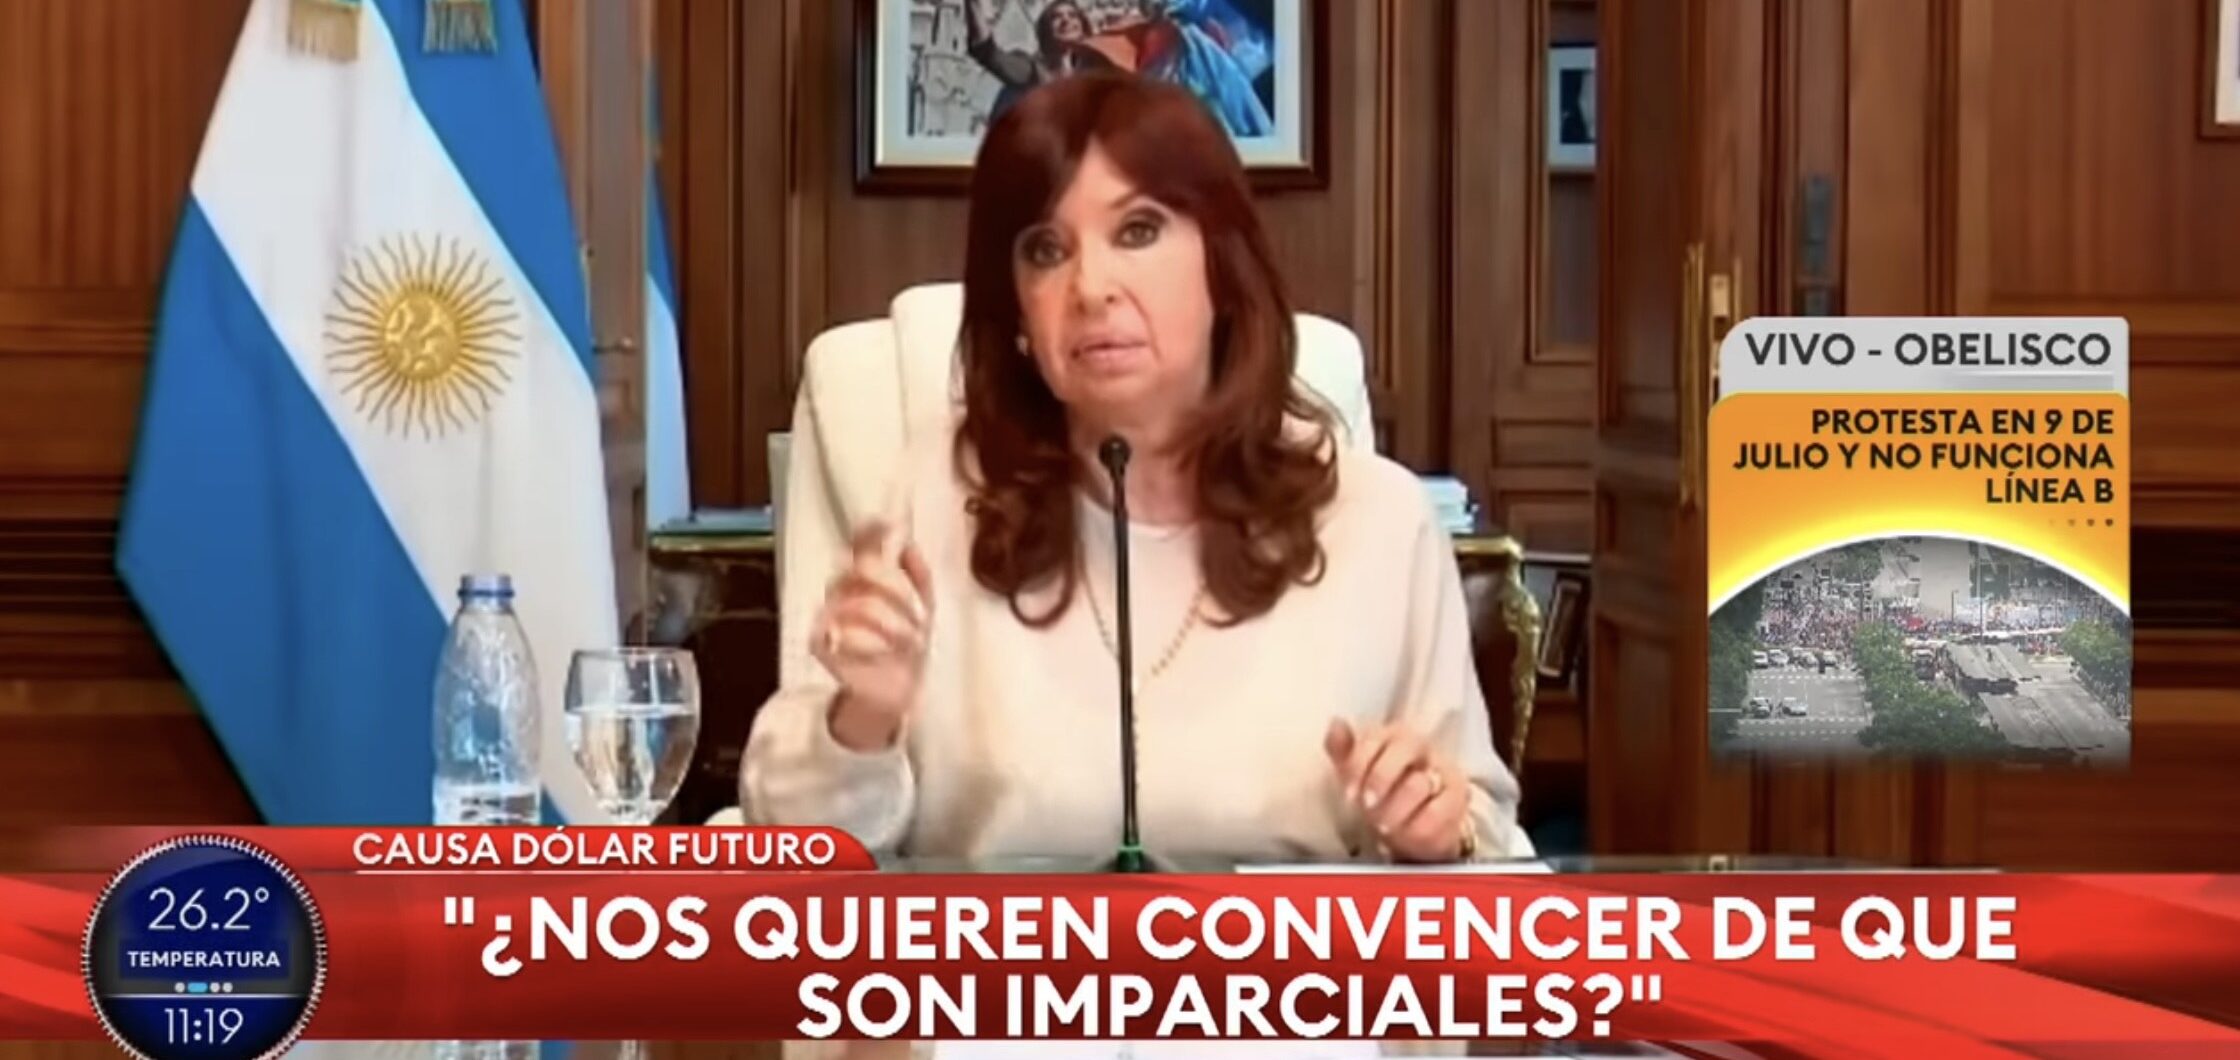 Dos fallos a favor de Macri y uno contra Cristina Fernández el mismo día estremecen la justicia en Argentina